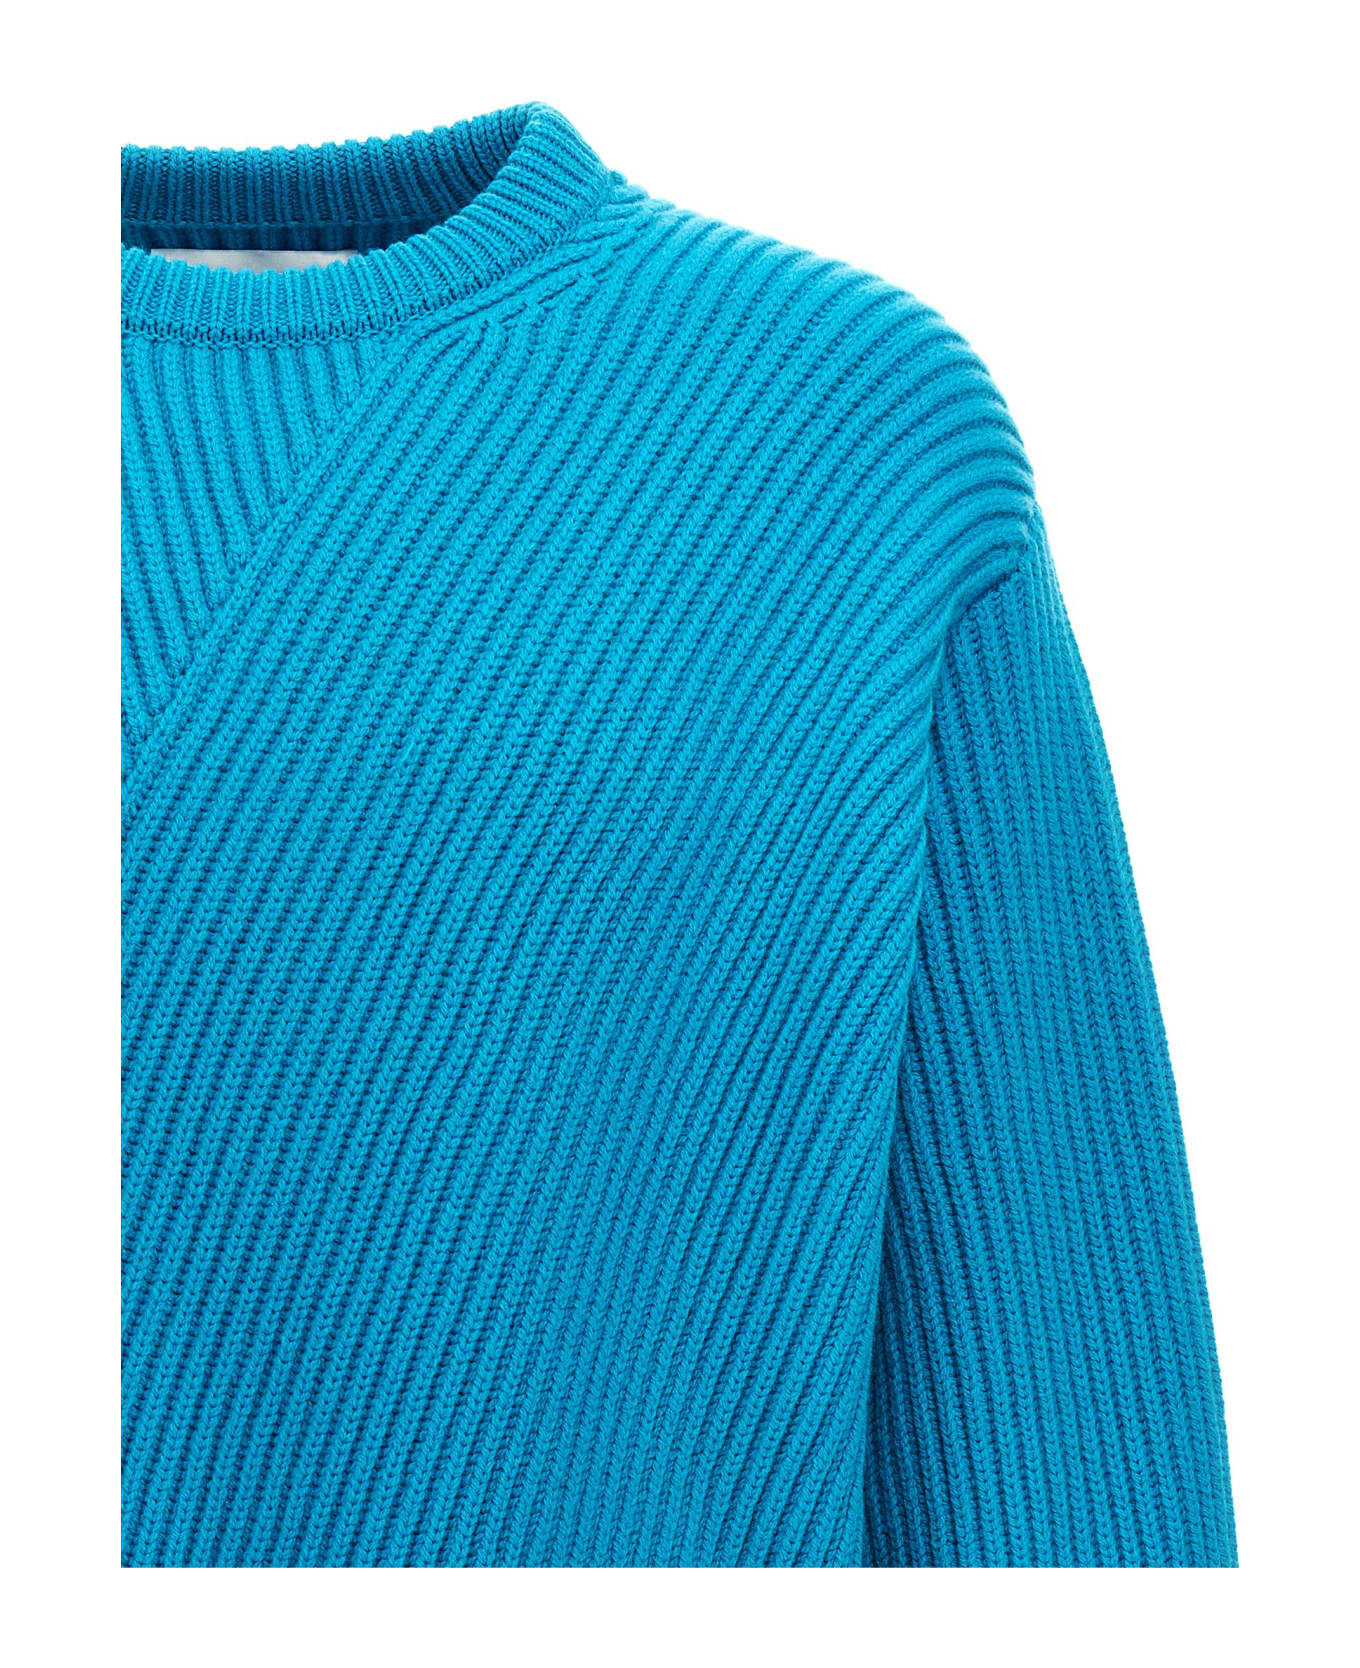 Jil Sander Wool Sweater - Light Blue